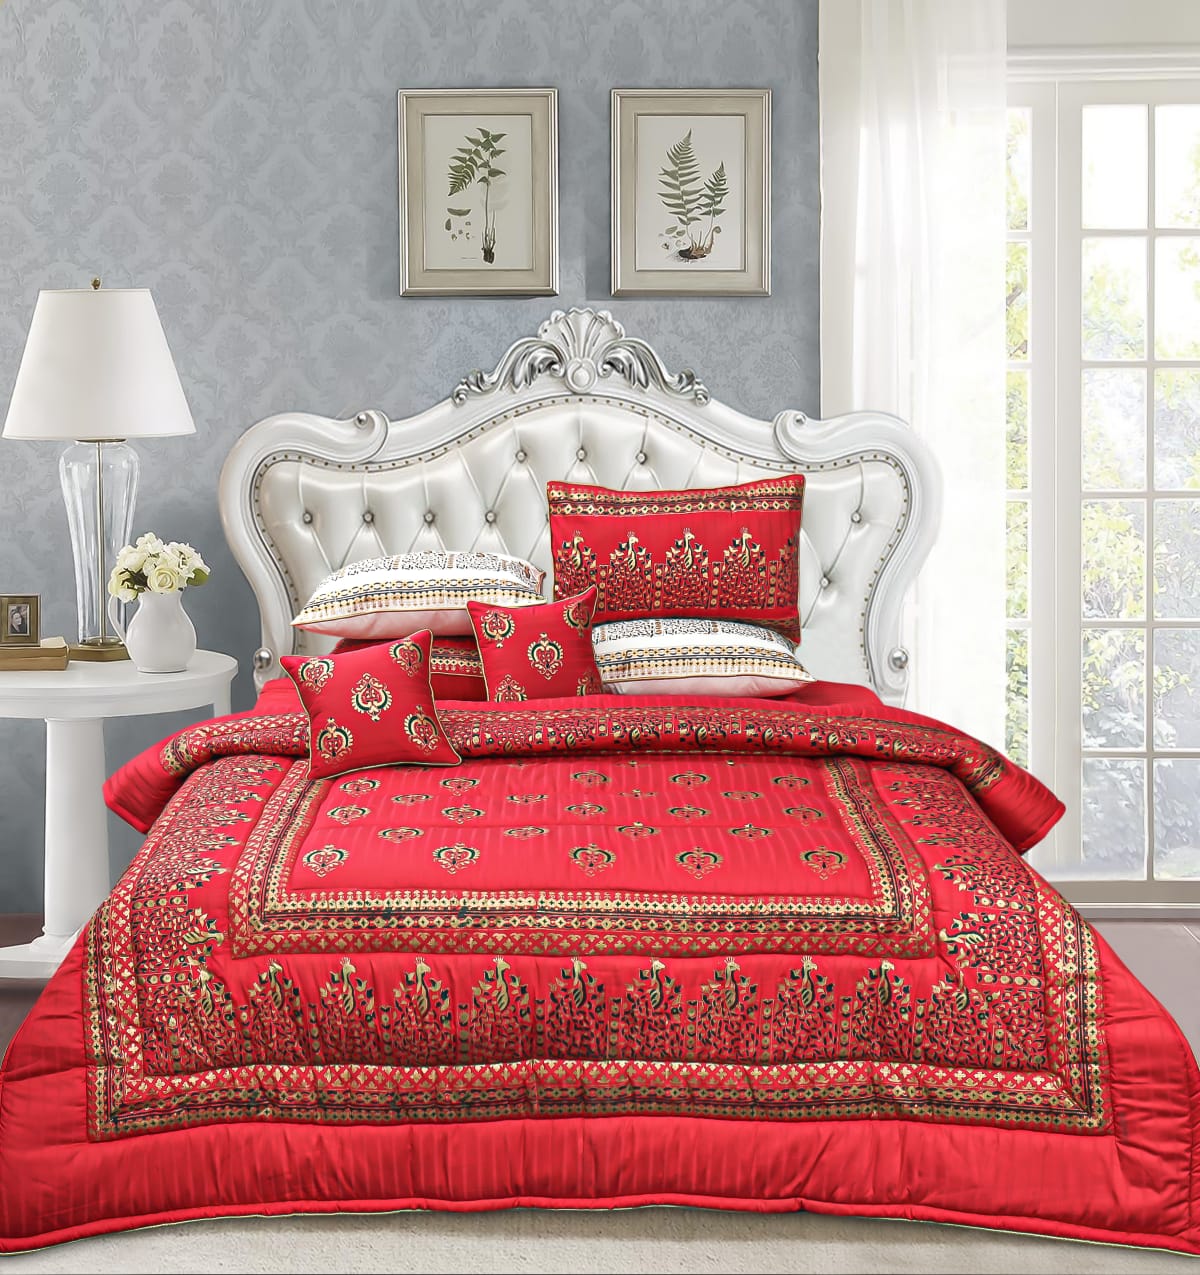 8 Pcs Bridal Bed Sheet Comforter Set Cotton Sateen Block Printed – Royal Garnet